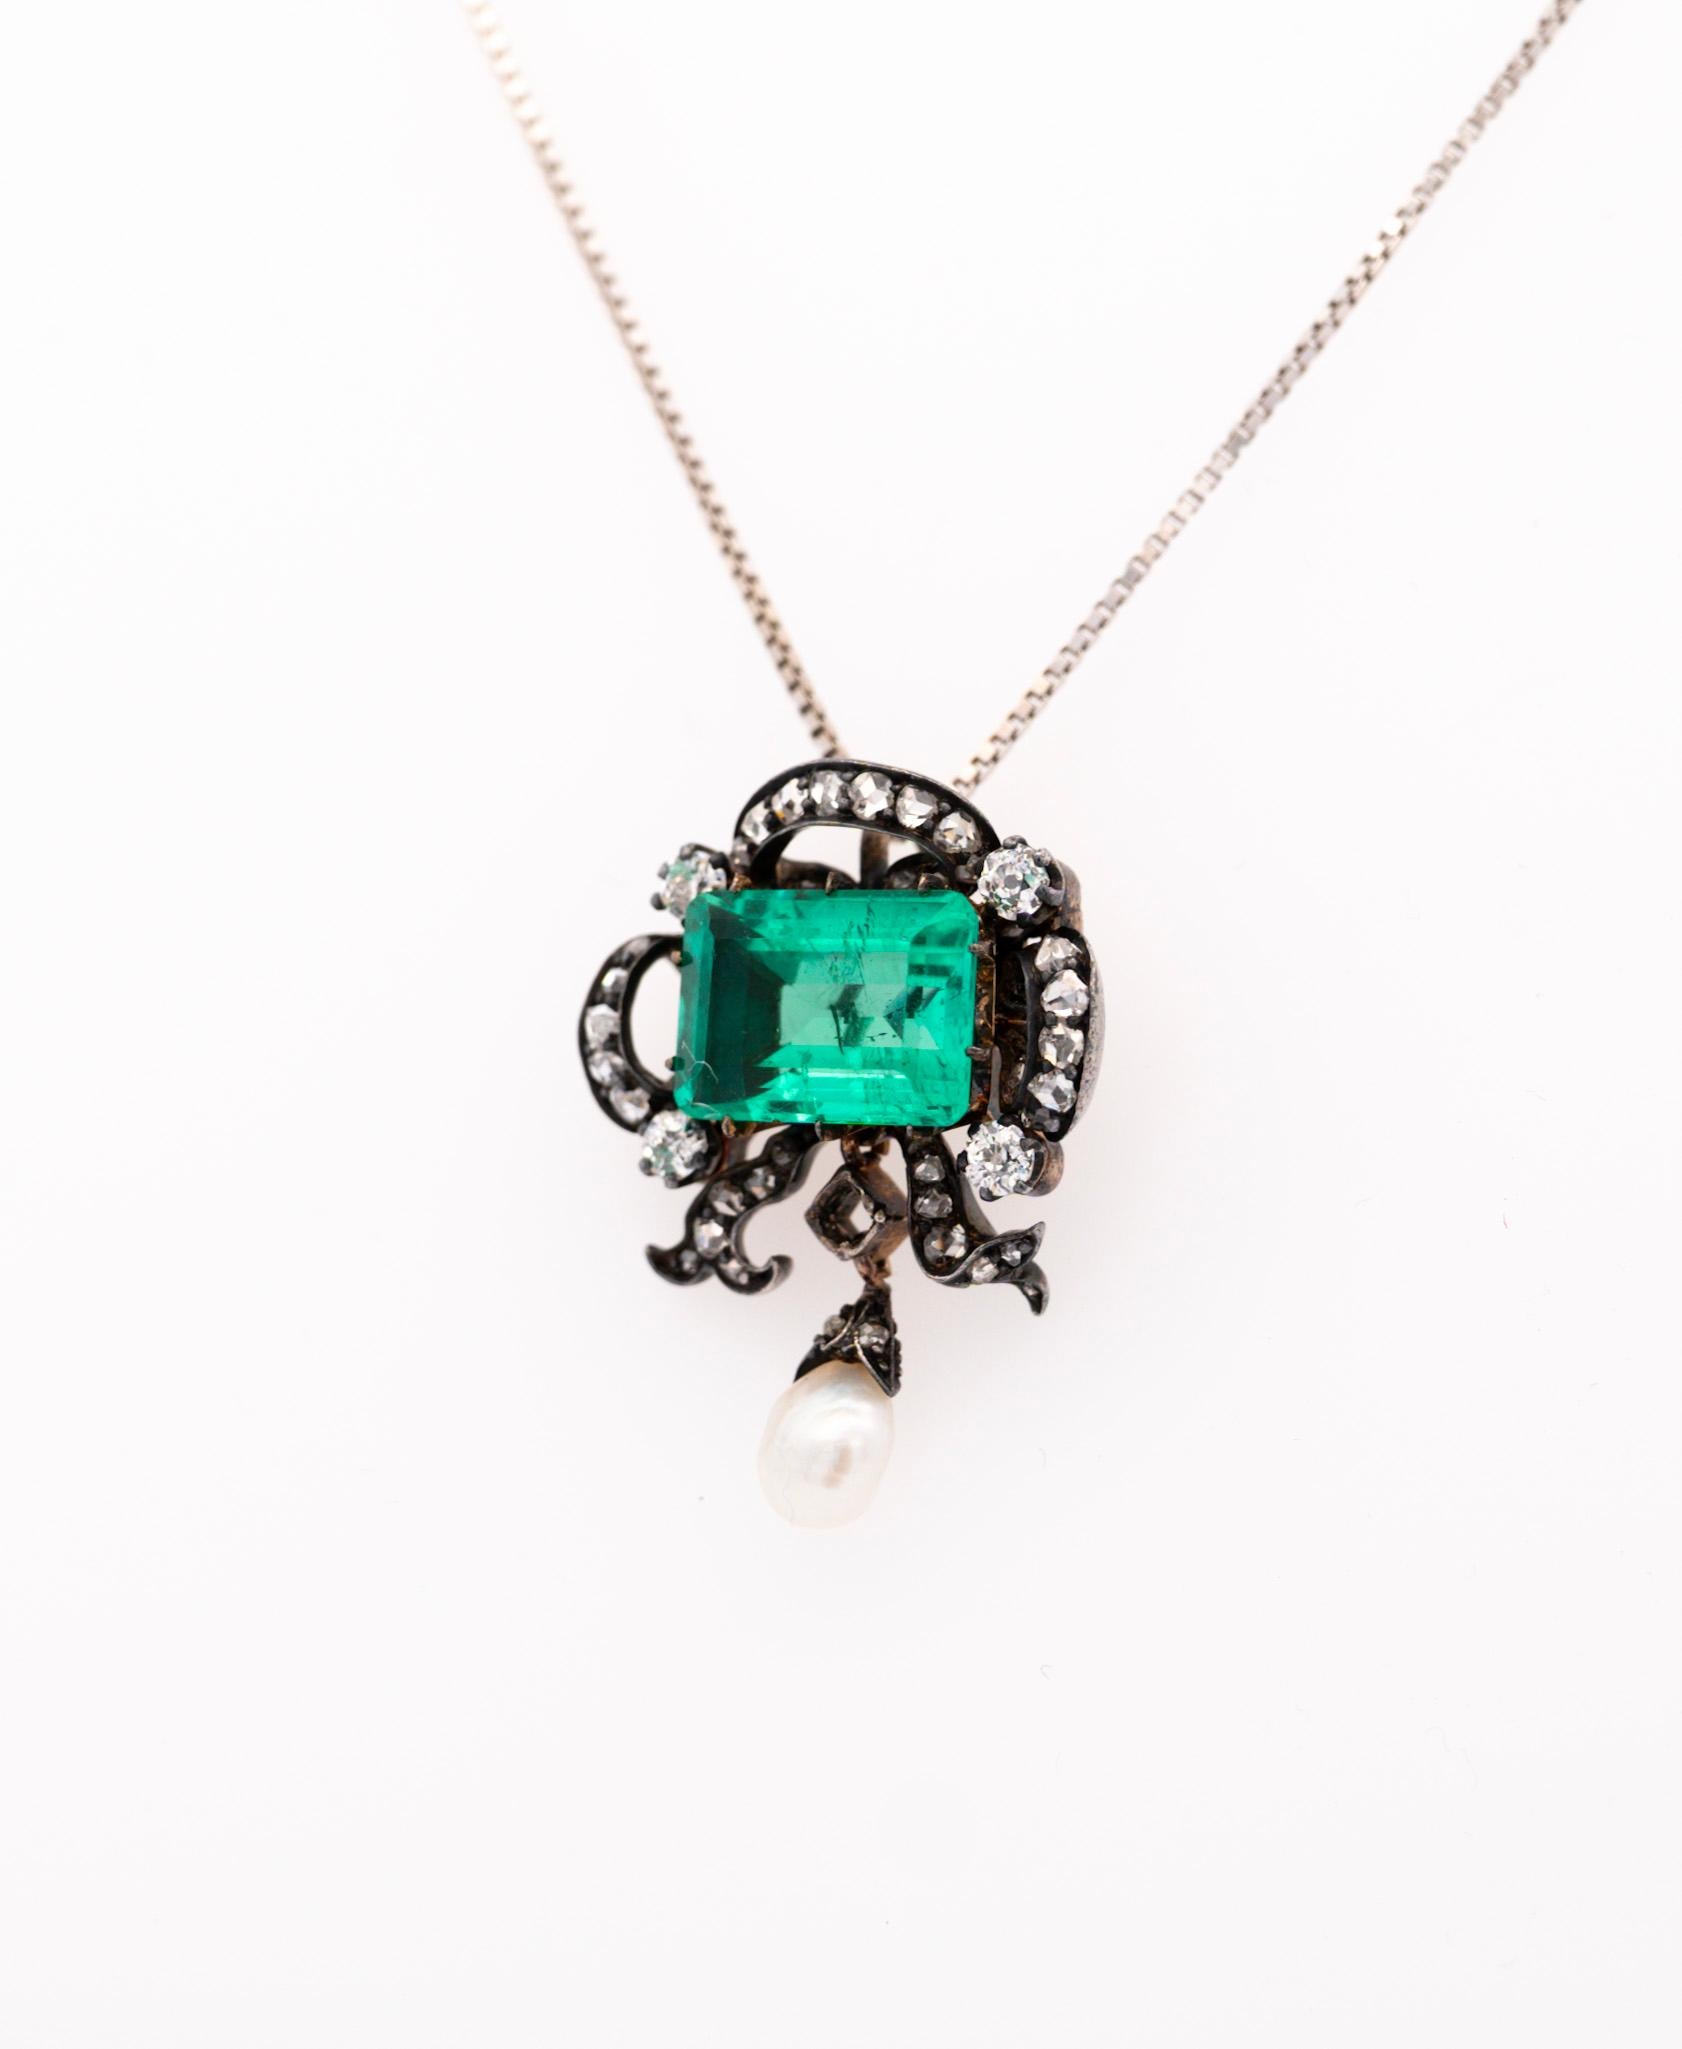 Antique Victorian Colombia Emerald, Pearl, & Old Mine Diamond Pendant Circa 1880 In Good Condition For Sale In Miami, FL